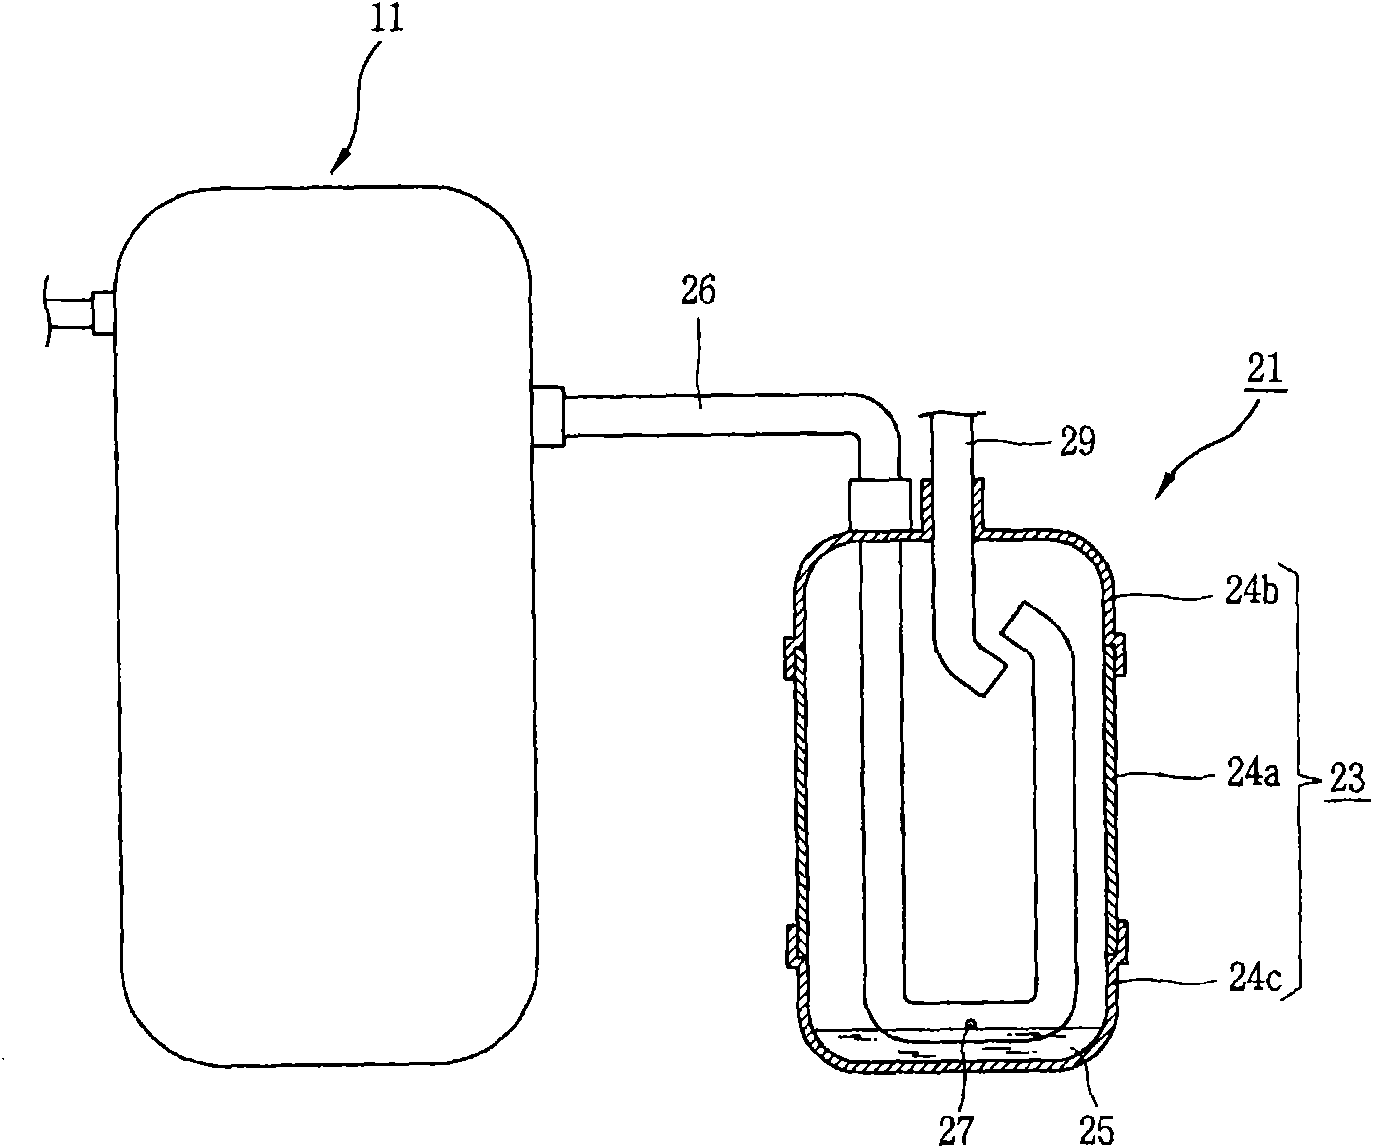 Liquid storage tank with multiple oil return holes